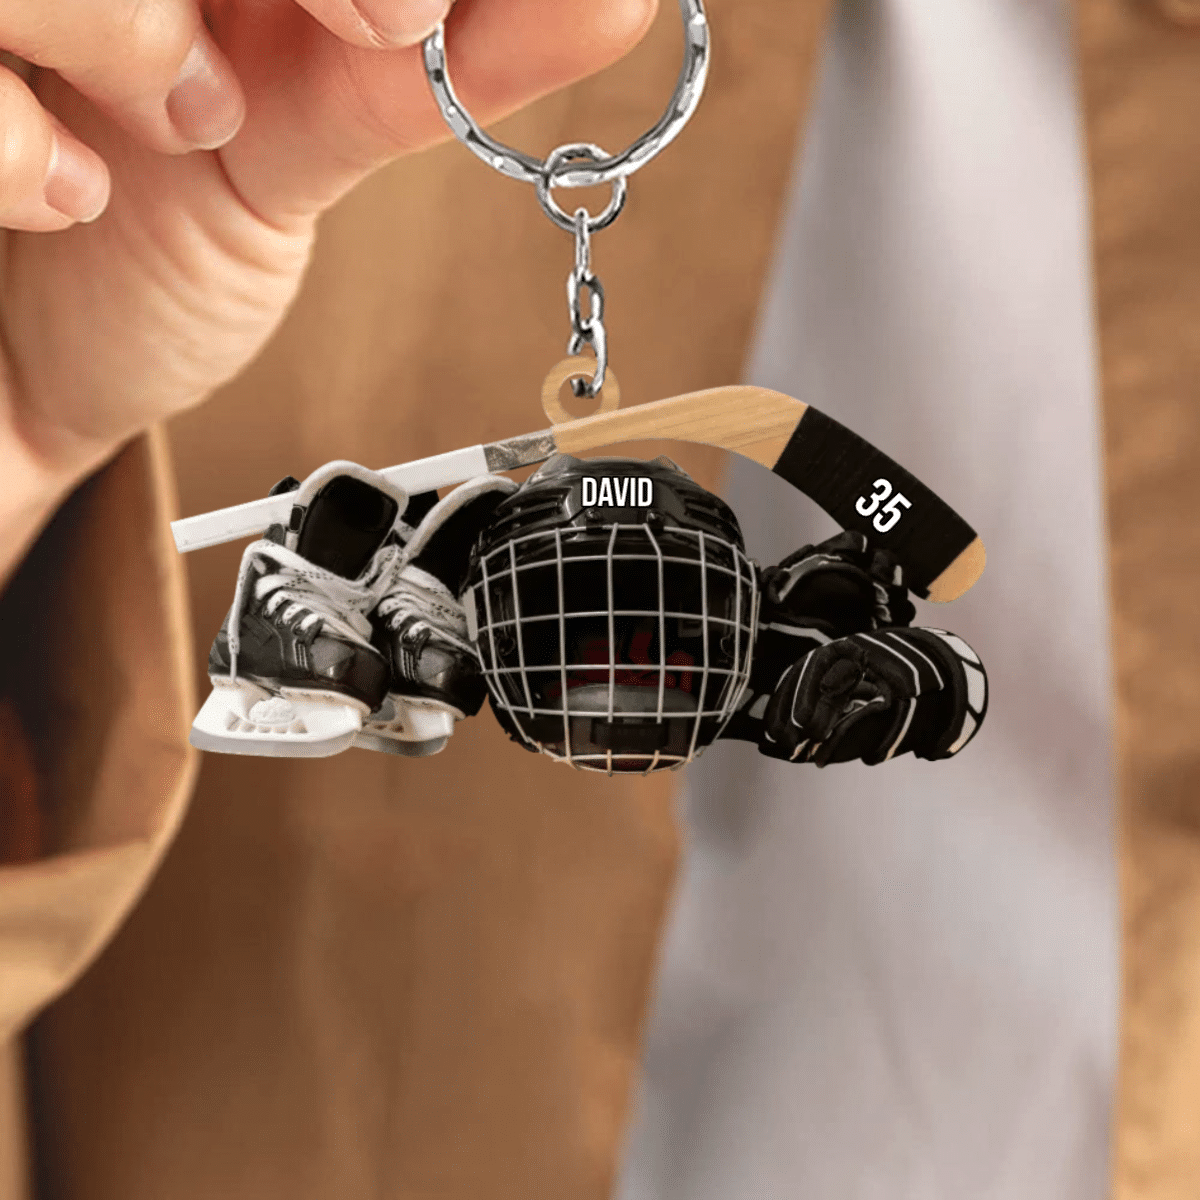 Personalized Hockey Keychain/ Hockey Skates Helmet And Stick Gift For Hockey Lover